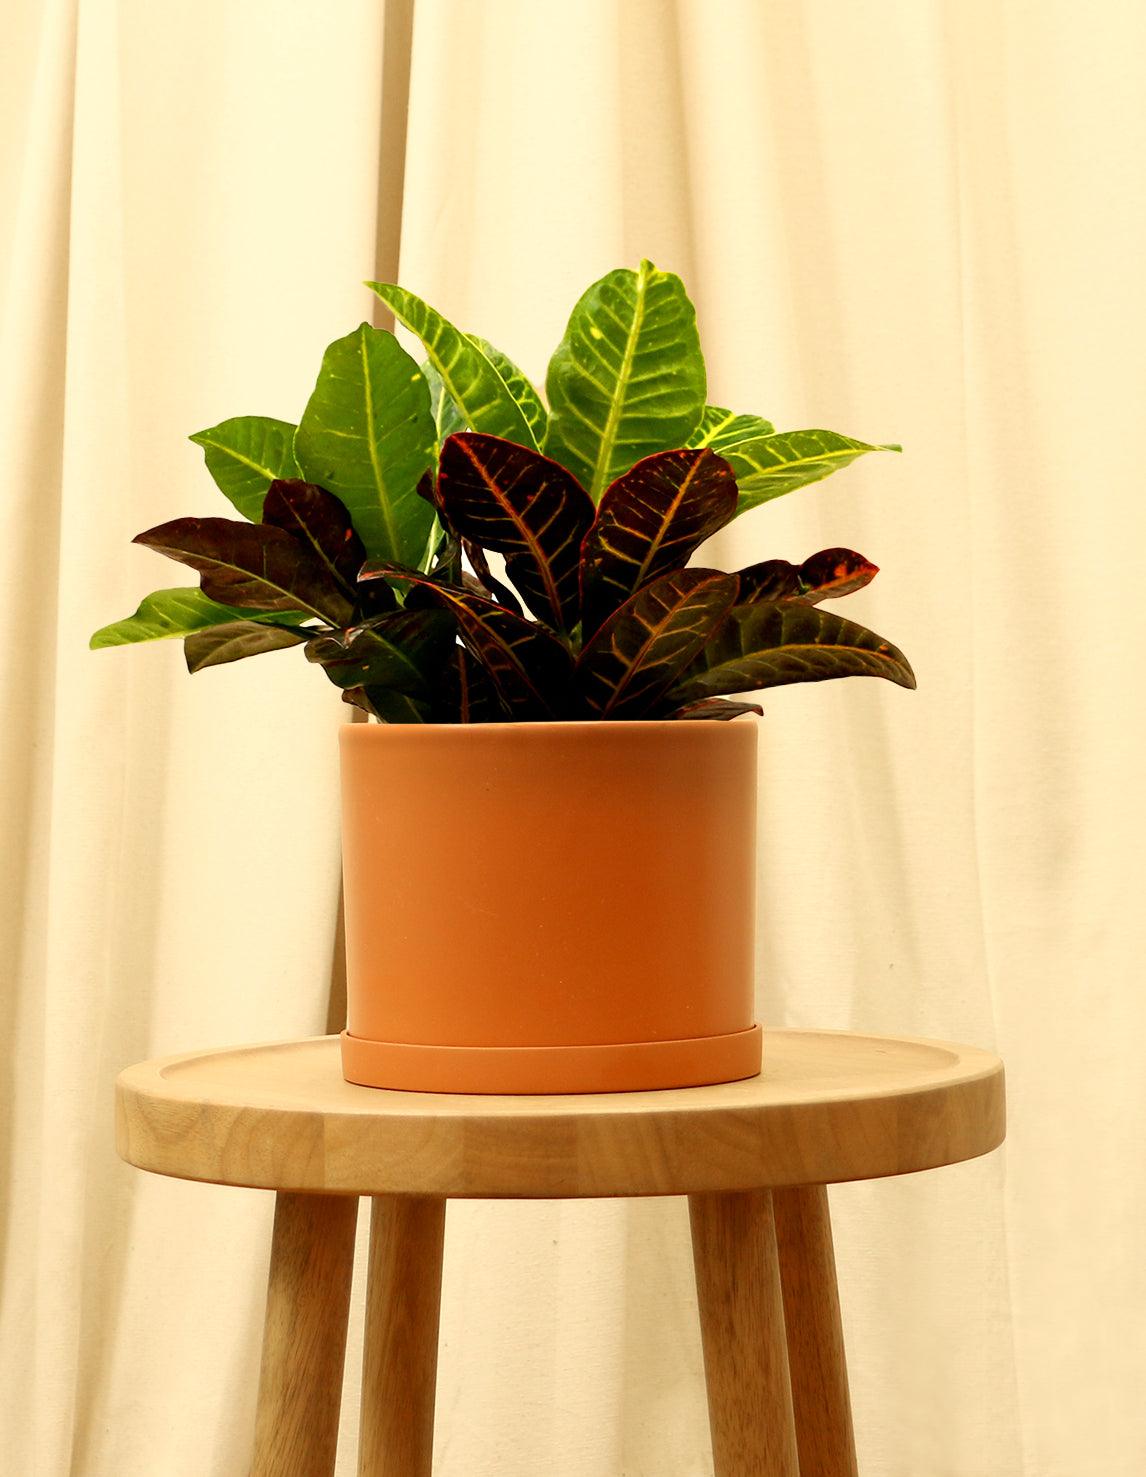 Medium Variegated Croton Plant in orange pot.